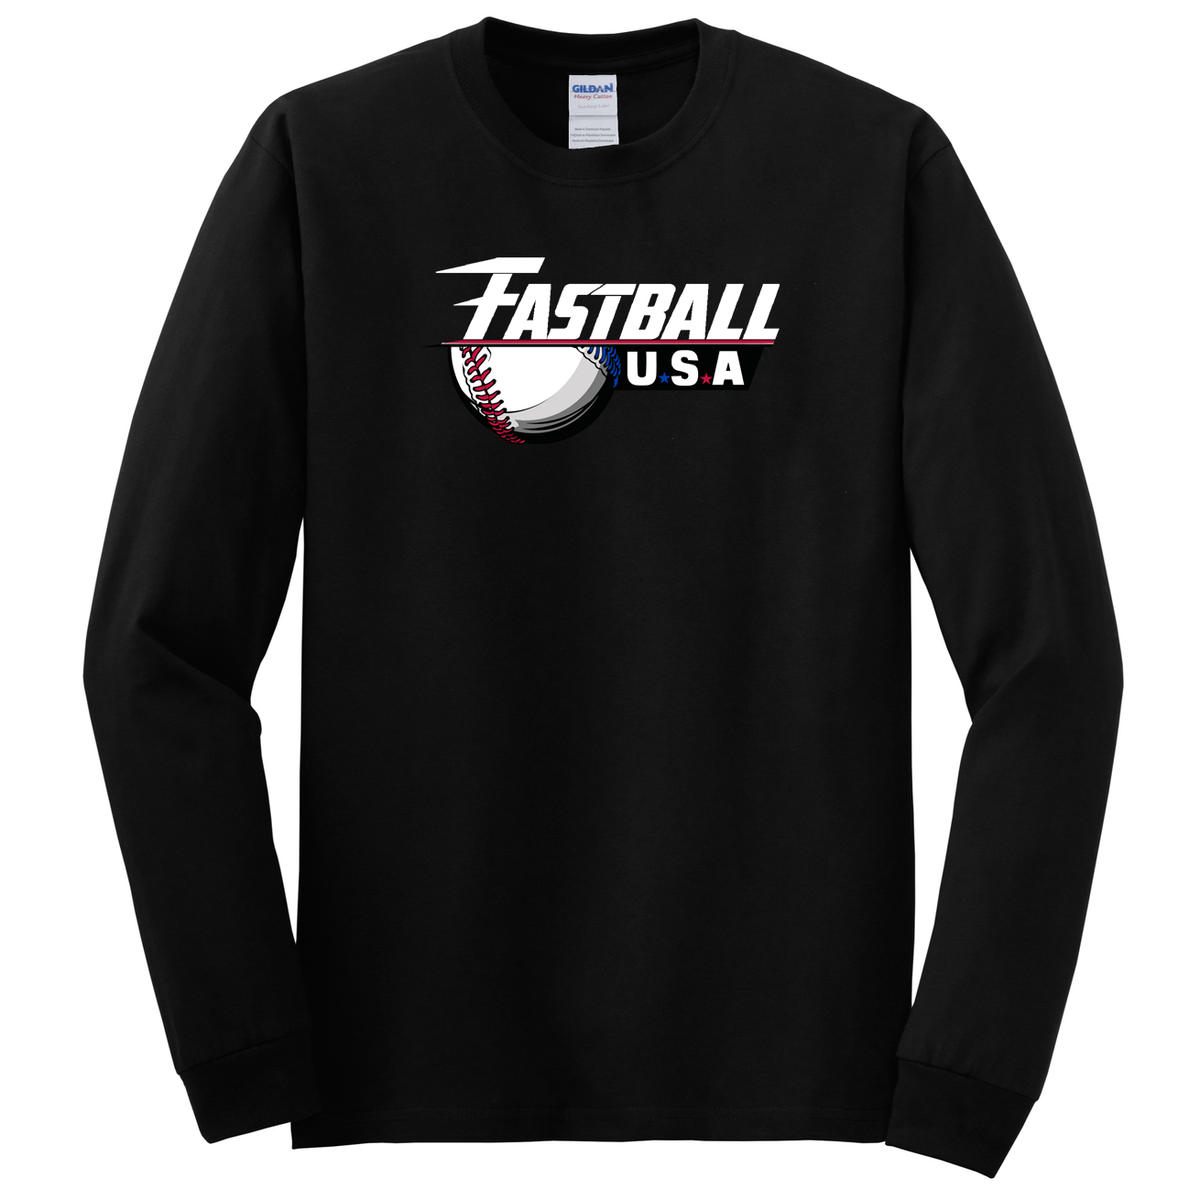 Fastball USA Academy Baseball Cotton Long Sleeve Shirt